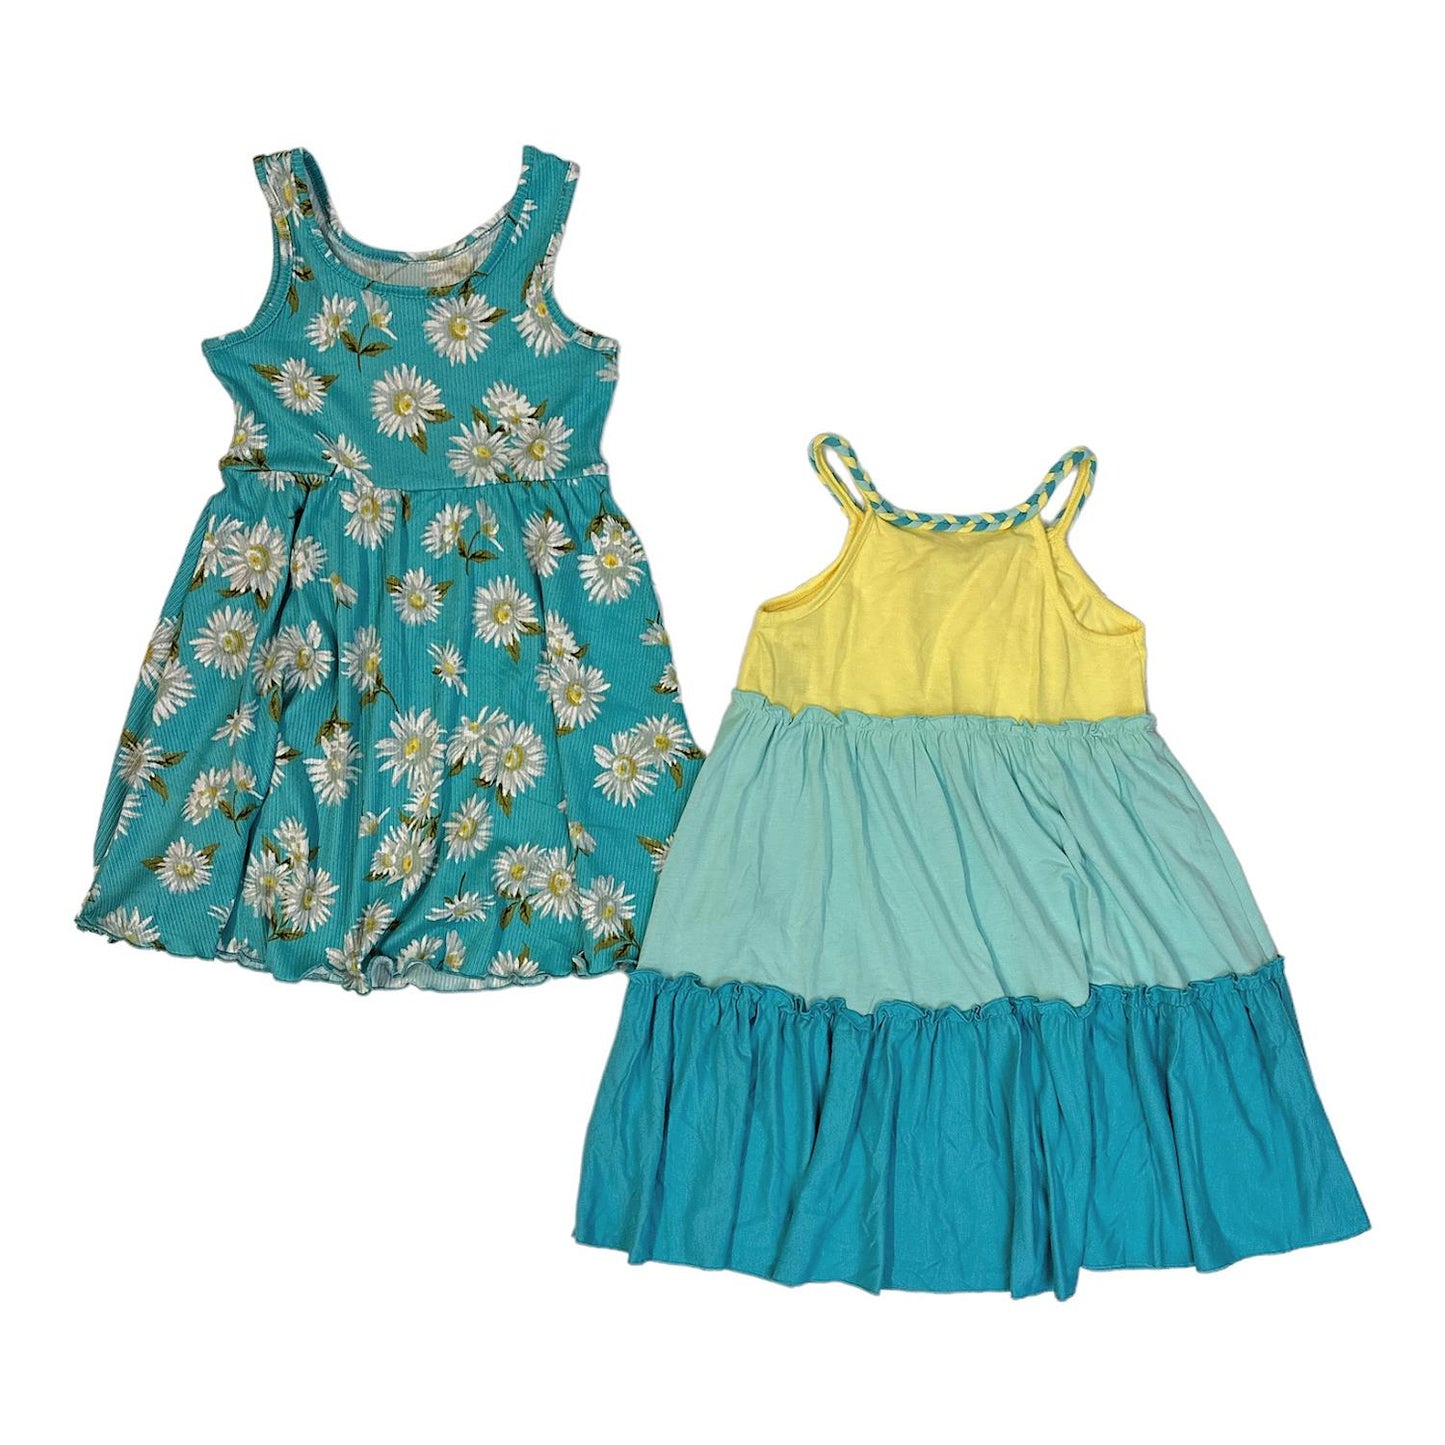 Zunie Girl Girl's 2-Pack Soft Knit Sleeveless Any Occasion Dresses Sundress